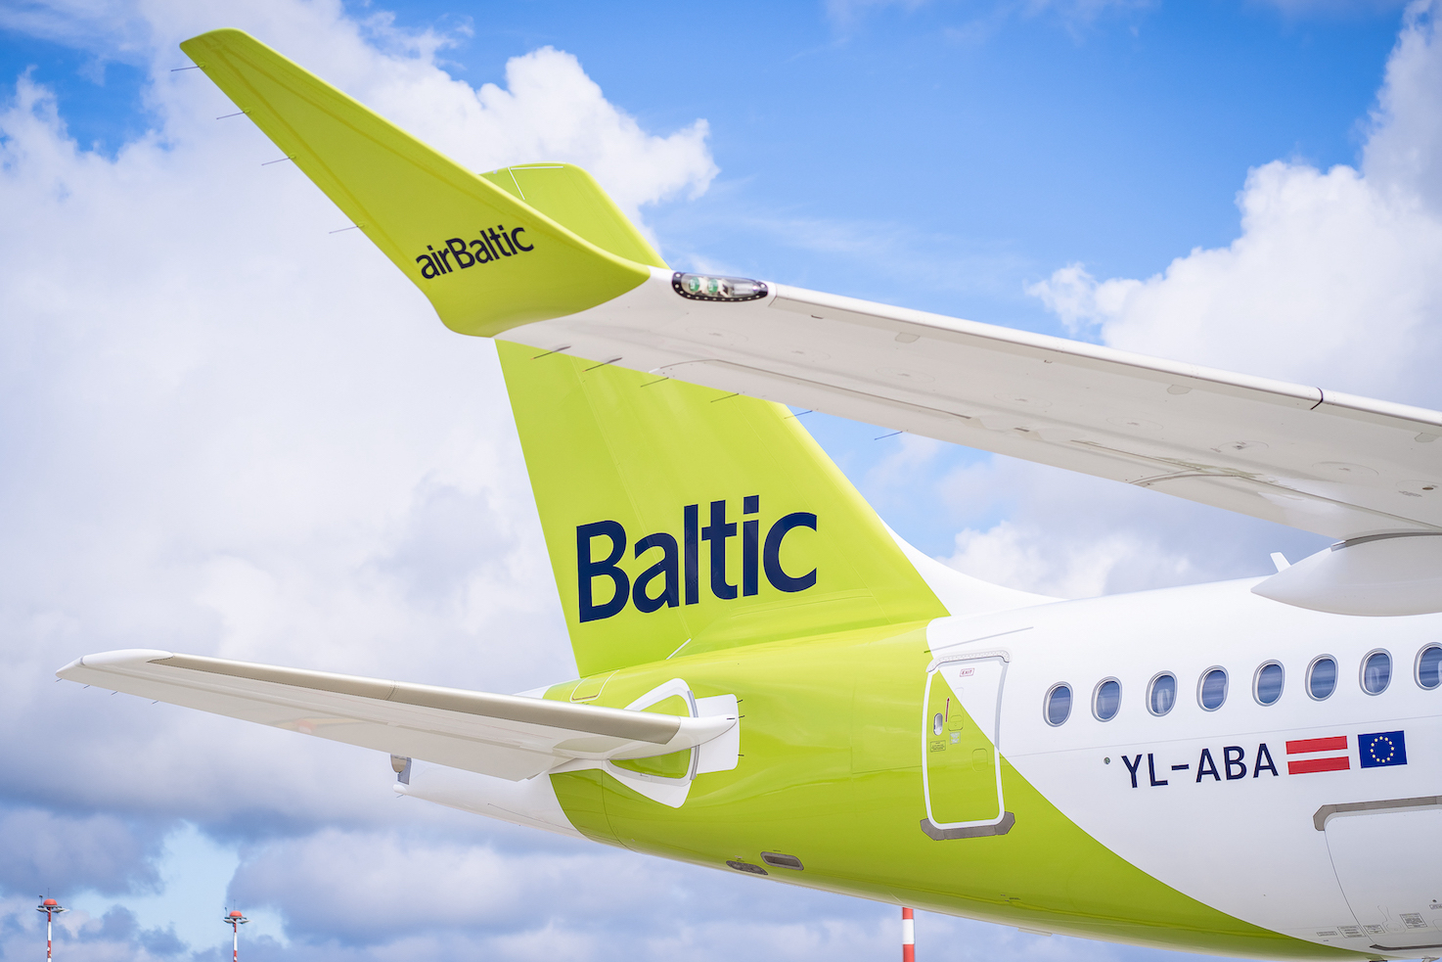 Air Balticu lennuk.